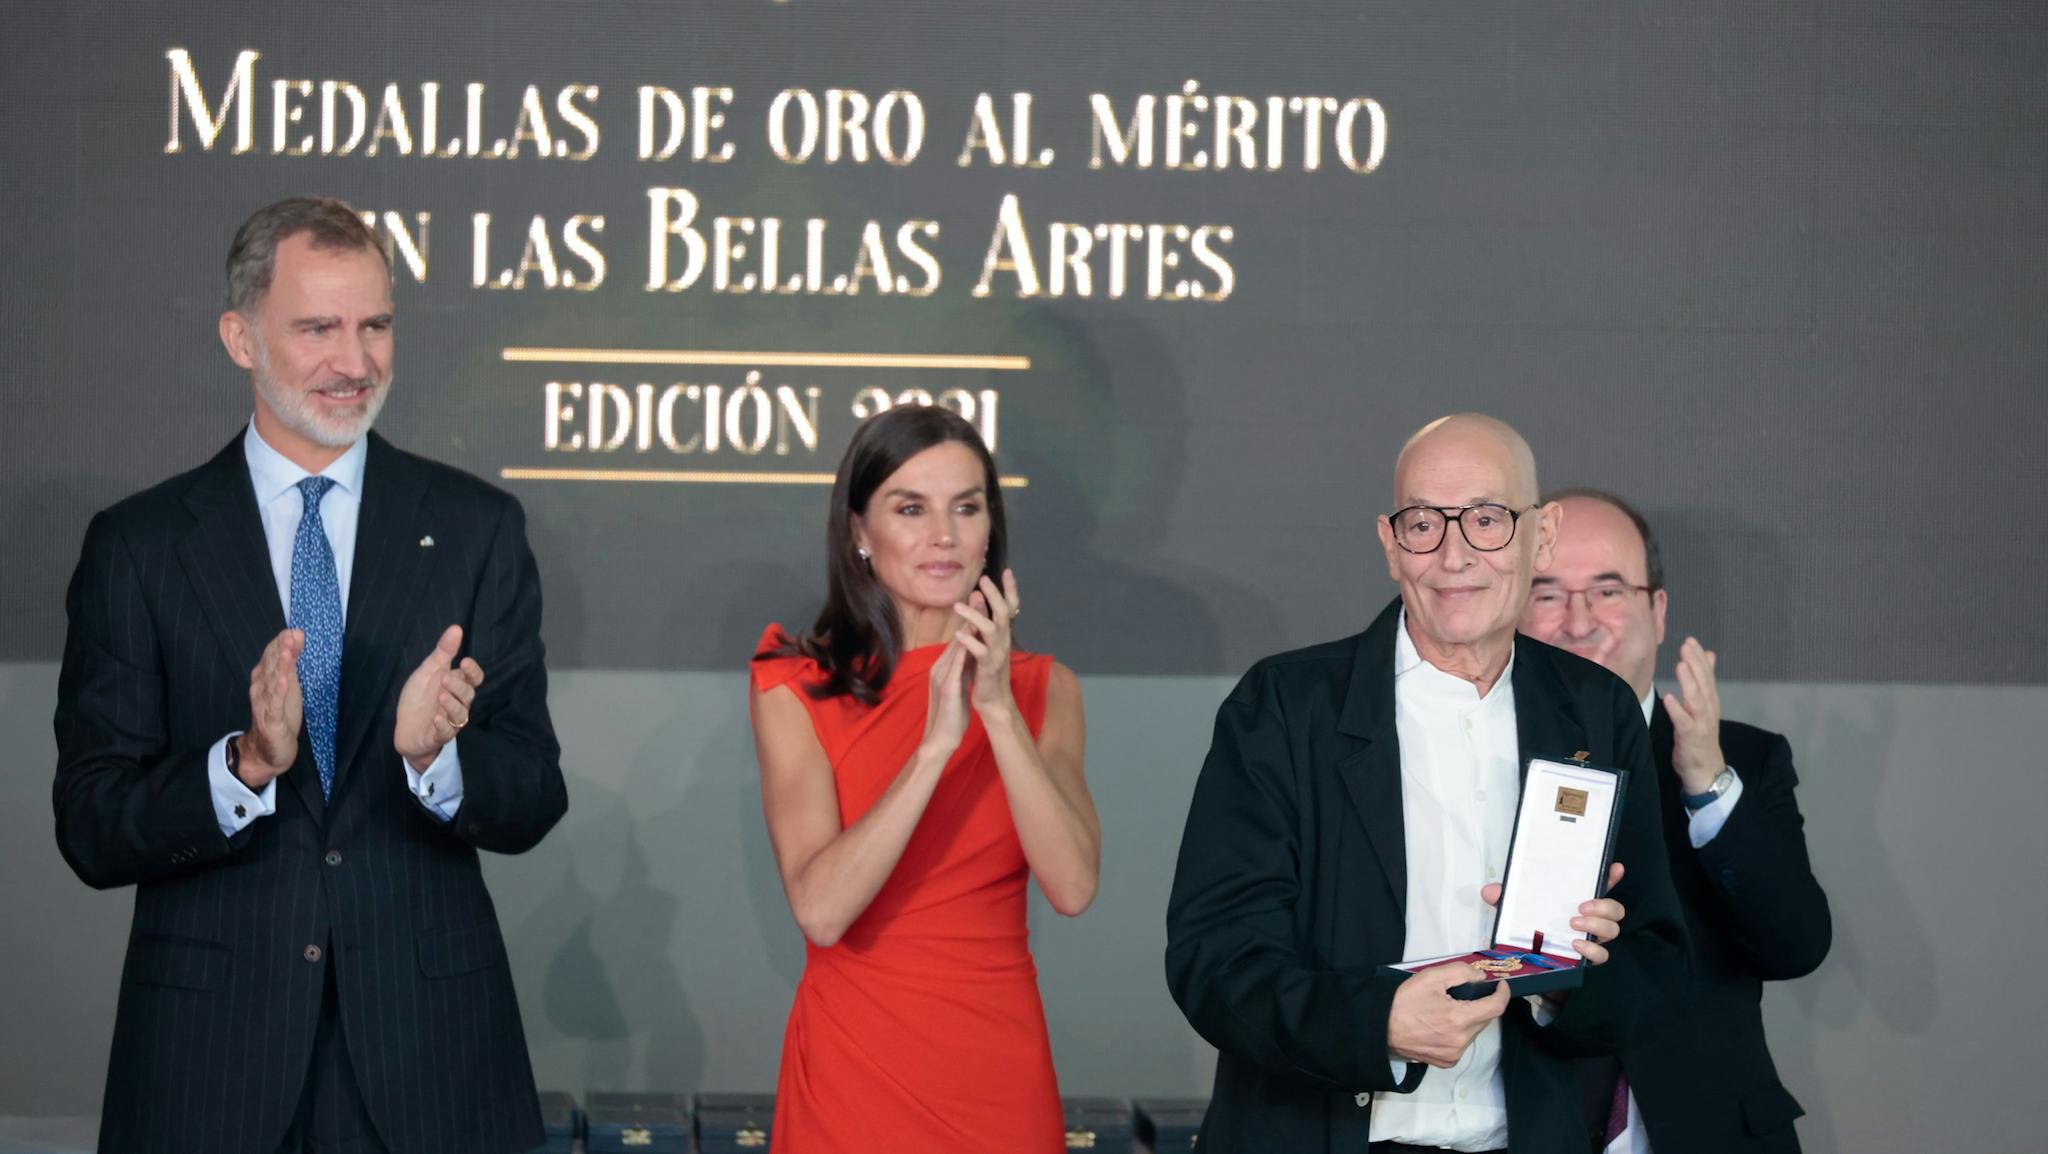 El cineasta Agustì Villaronga recoge de manos de los Reyes de España la Medalla de Oro al Mérito en las Bellas Artes